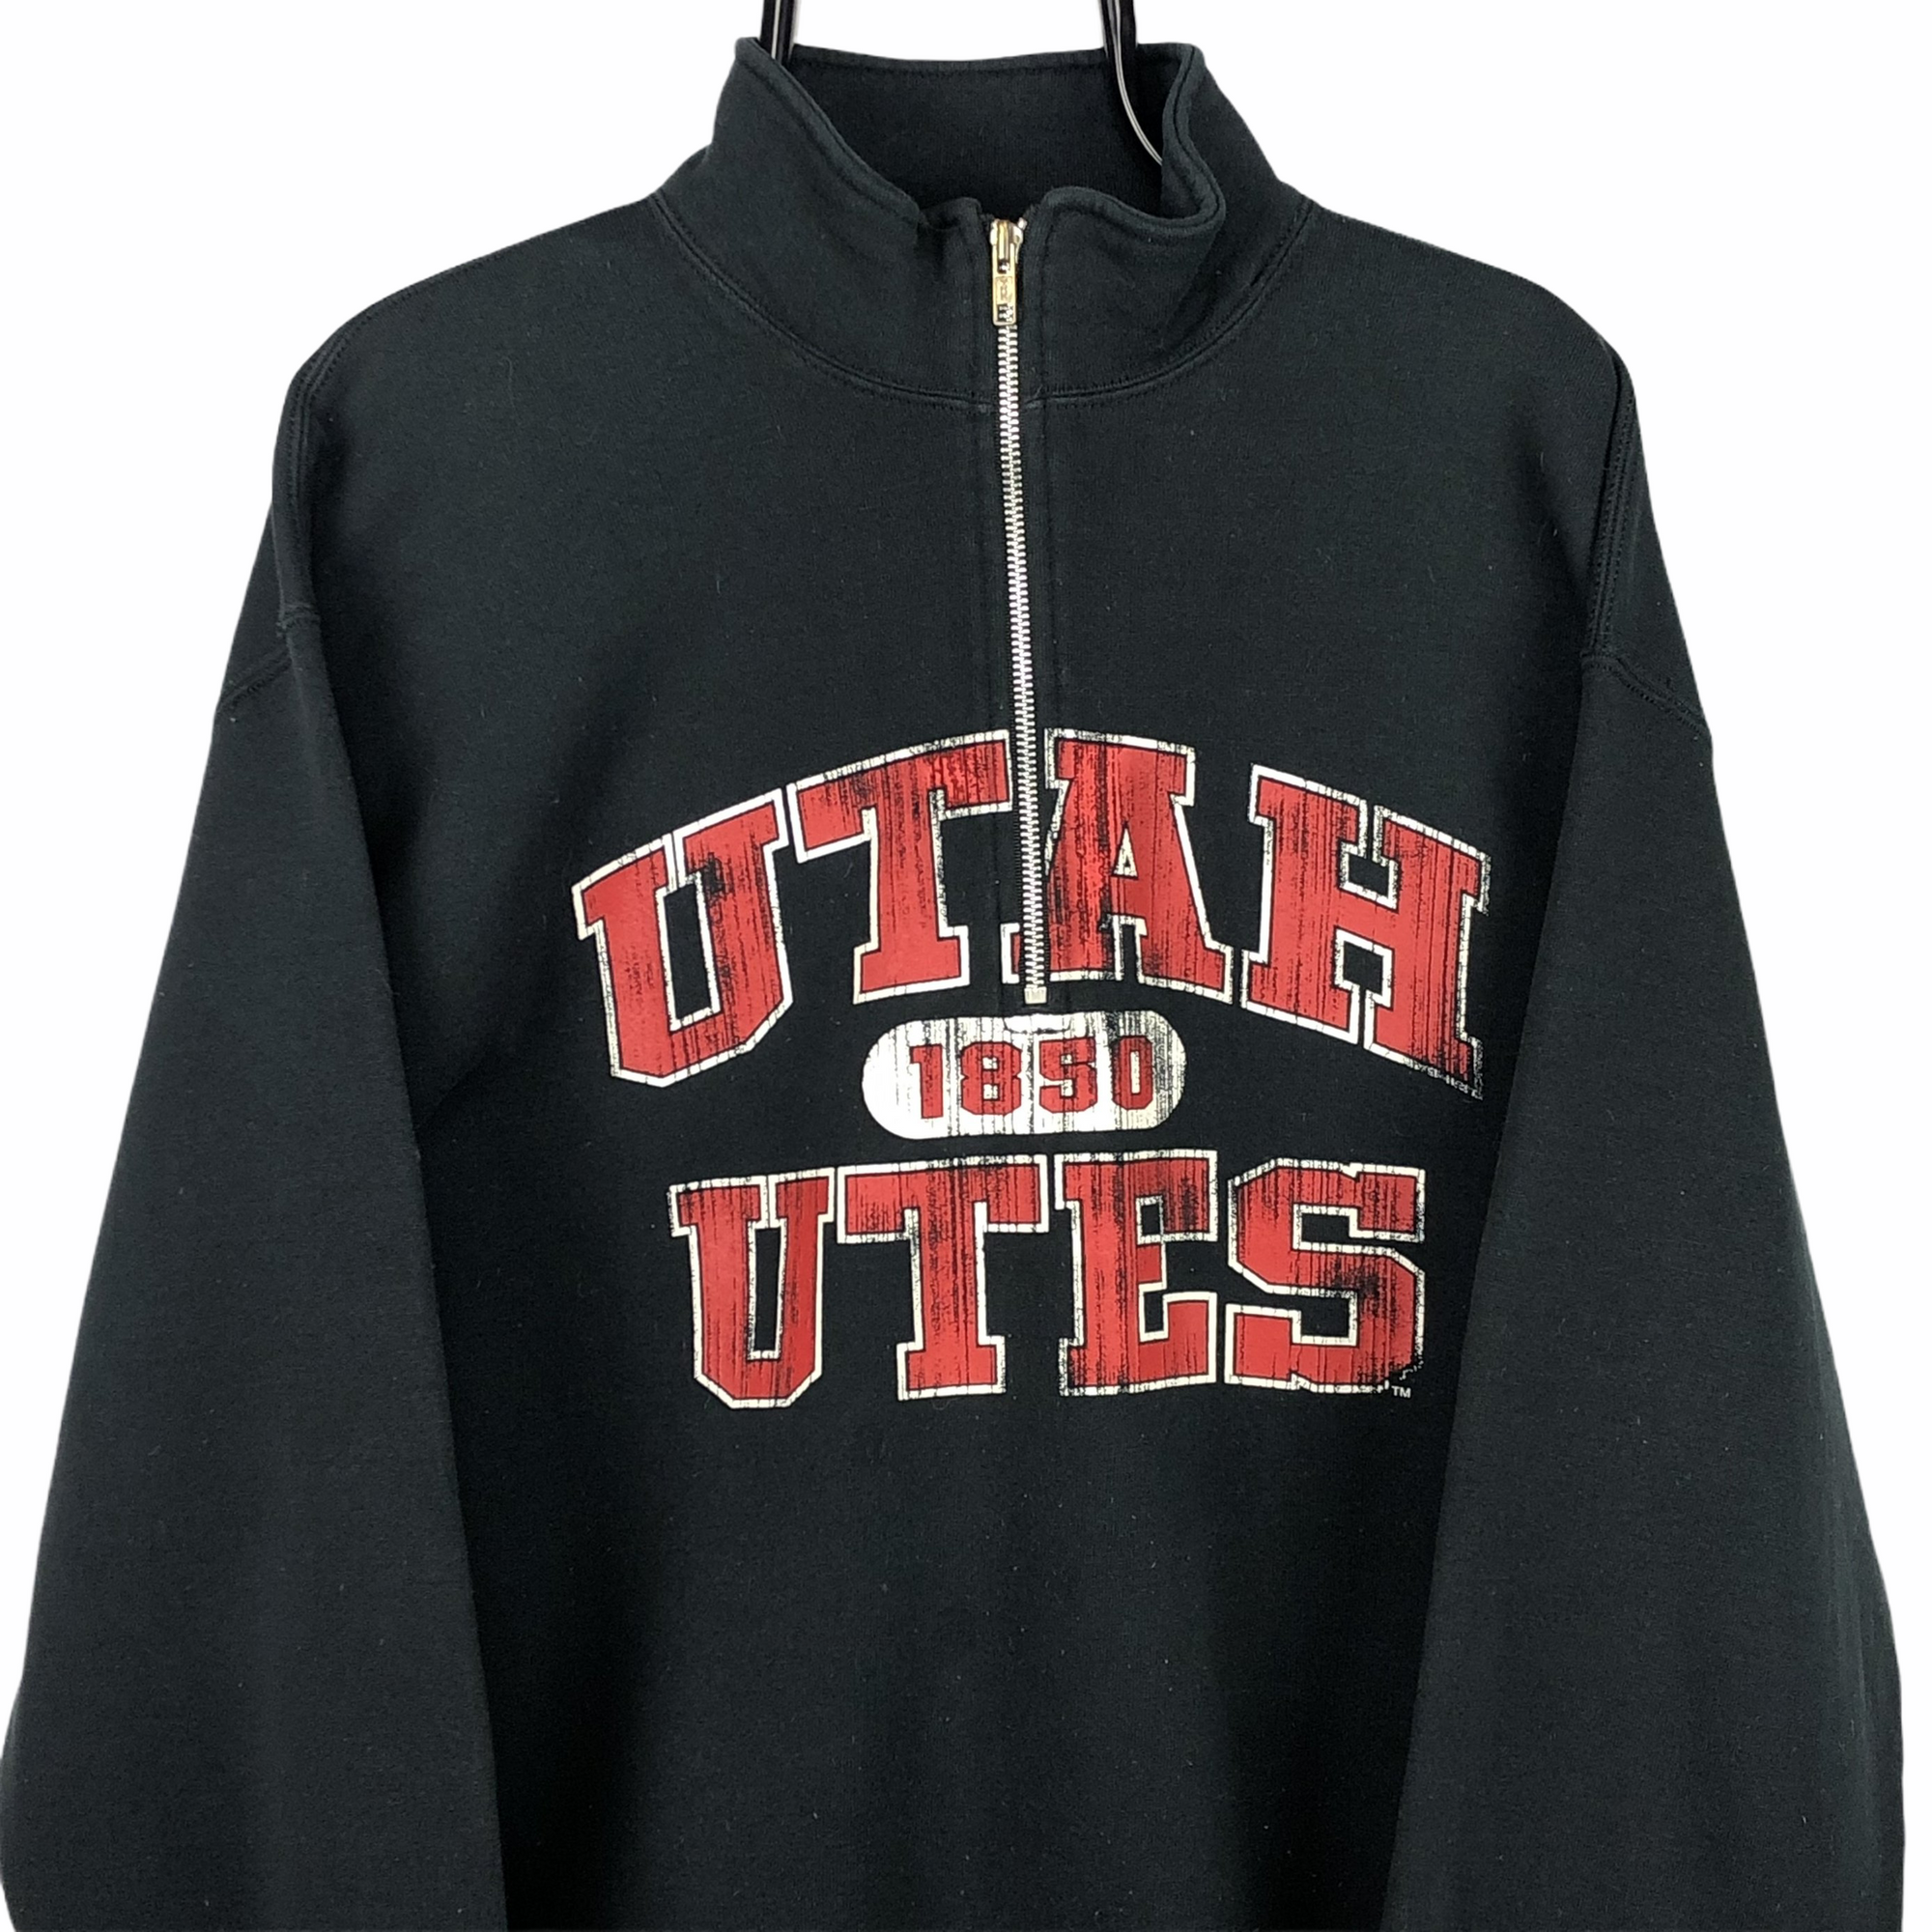 Vintage Russell Athletic Utah 1/4 Zip Sweatshirt in Black - Men's Medium/Women's Large